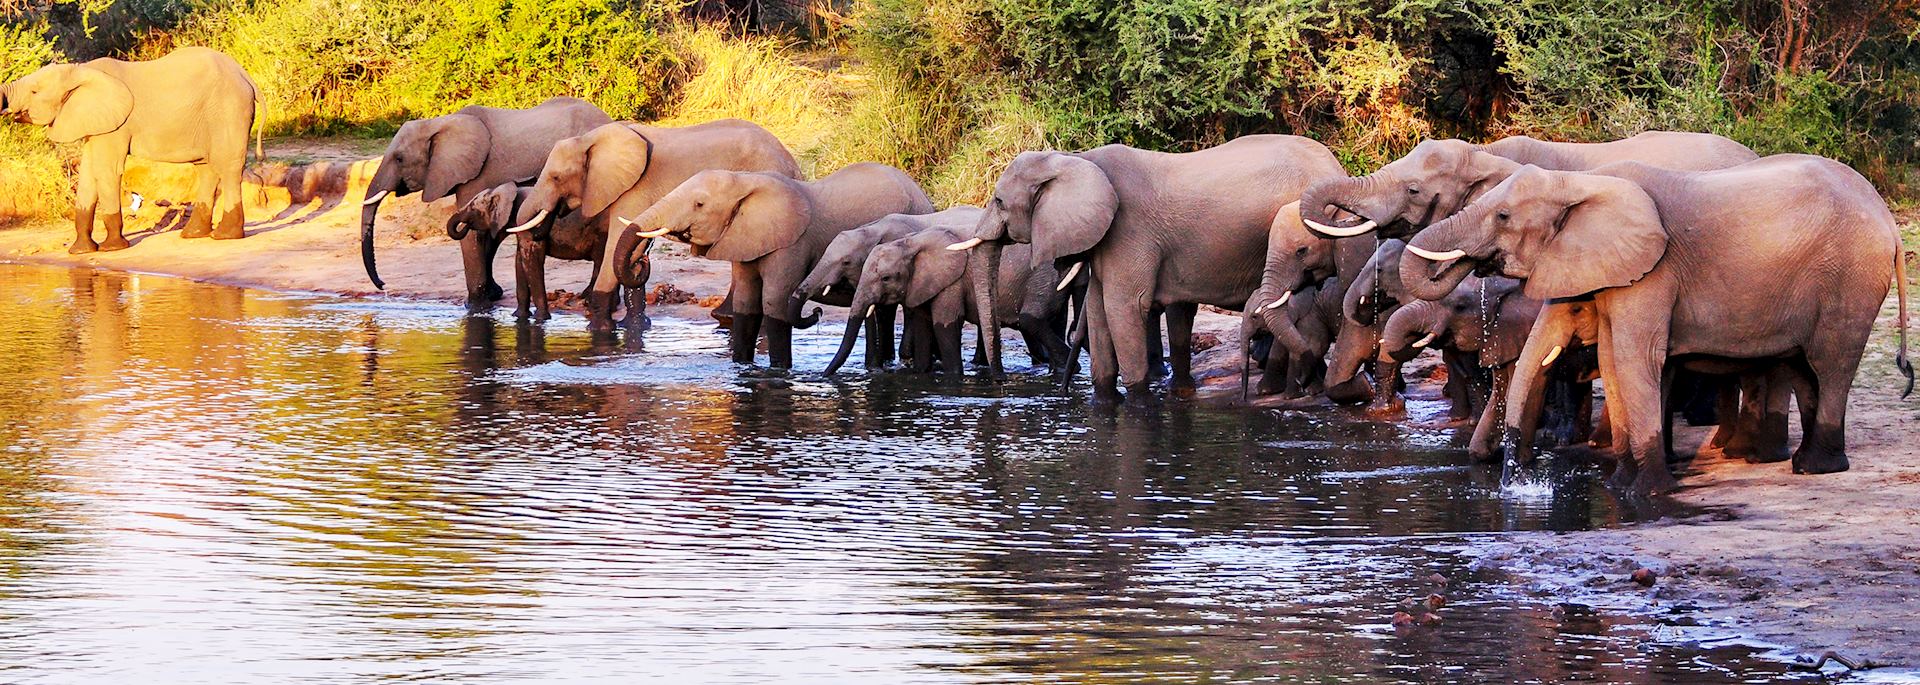 Herd of elephant, Kruger National Park, South Africa